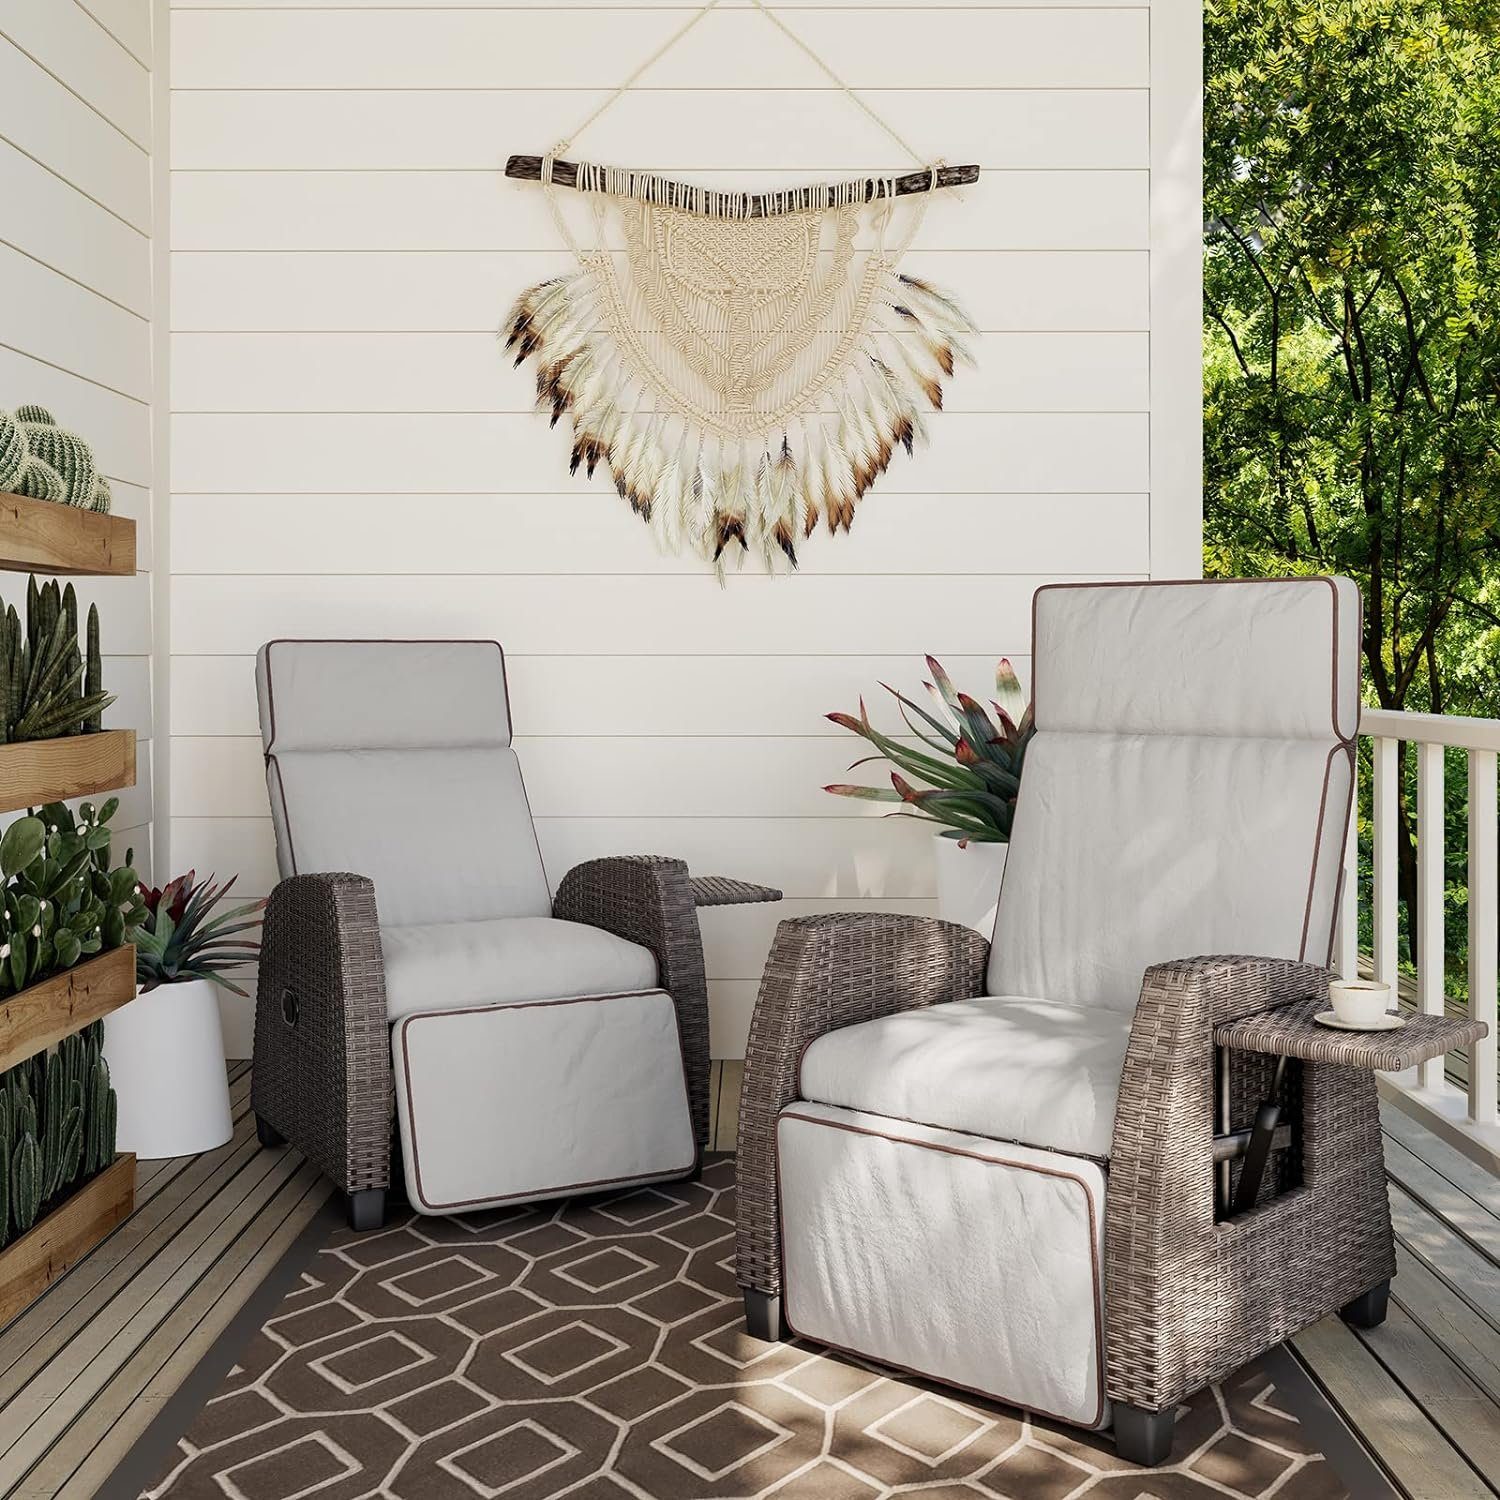 patio Beige Grau | Grand aus mit mit Sitzkissen, Grad einstellbar PE-Rattan, Gartensessel 150 Beistelltisch, Rückenlehne